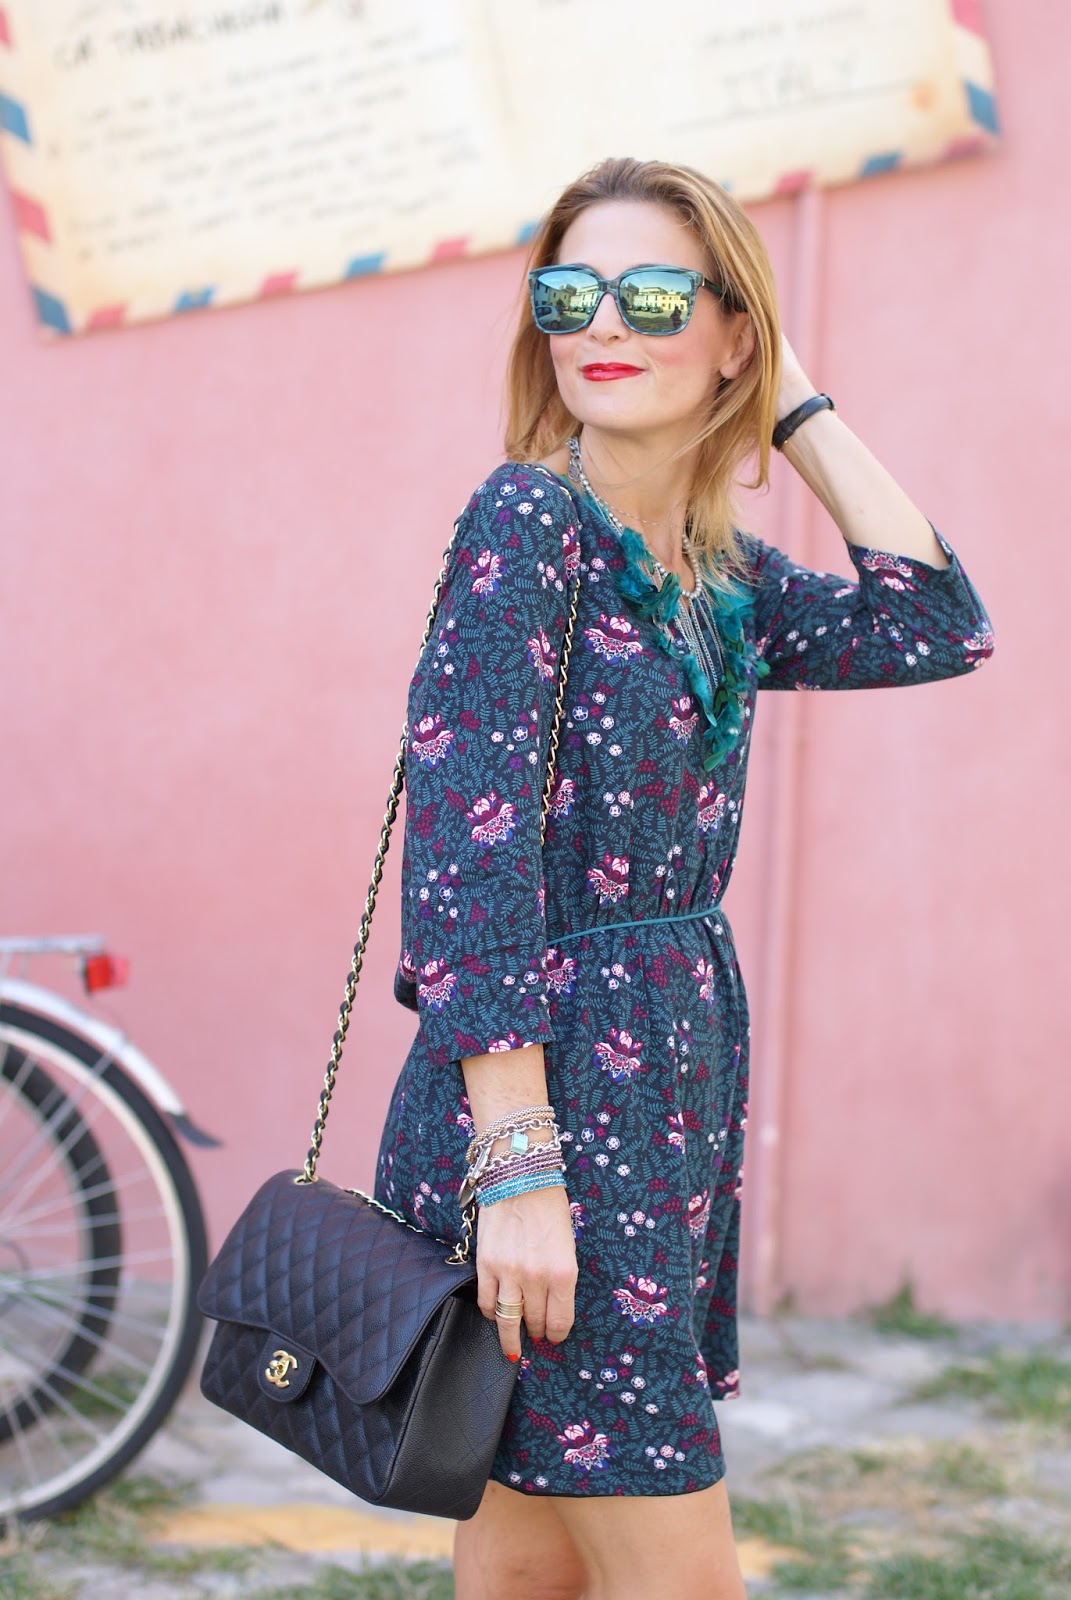 Paramita Magnolia dress and Chanel 2.55 bag on Fashion and Cookies fashion blog, fashion blogger style !